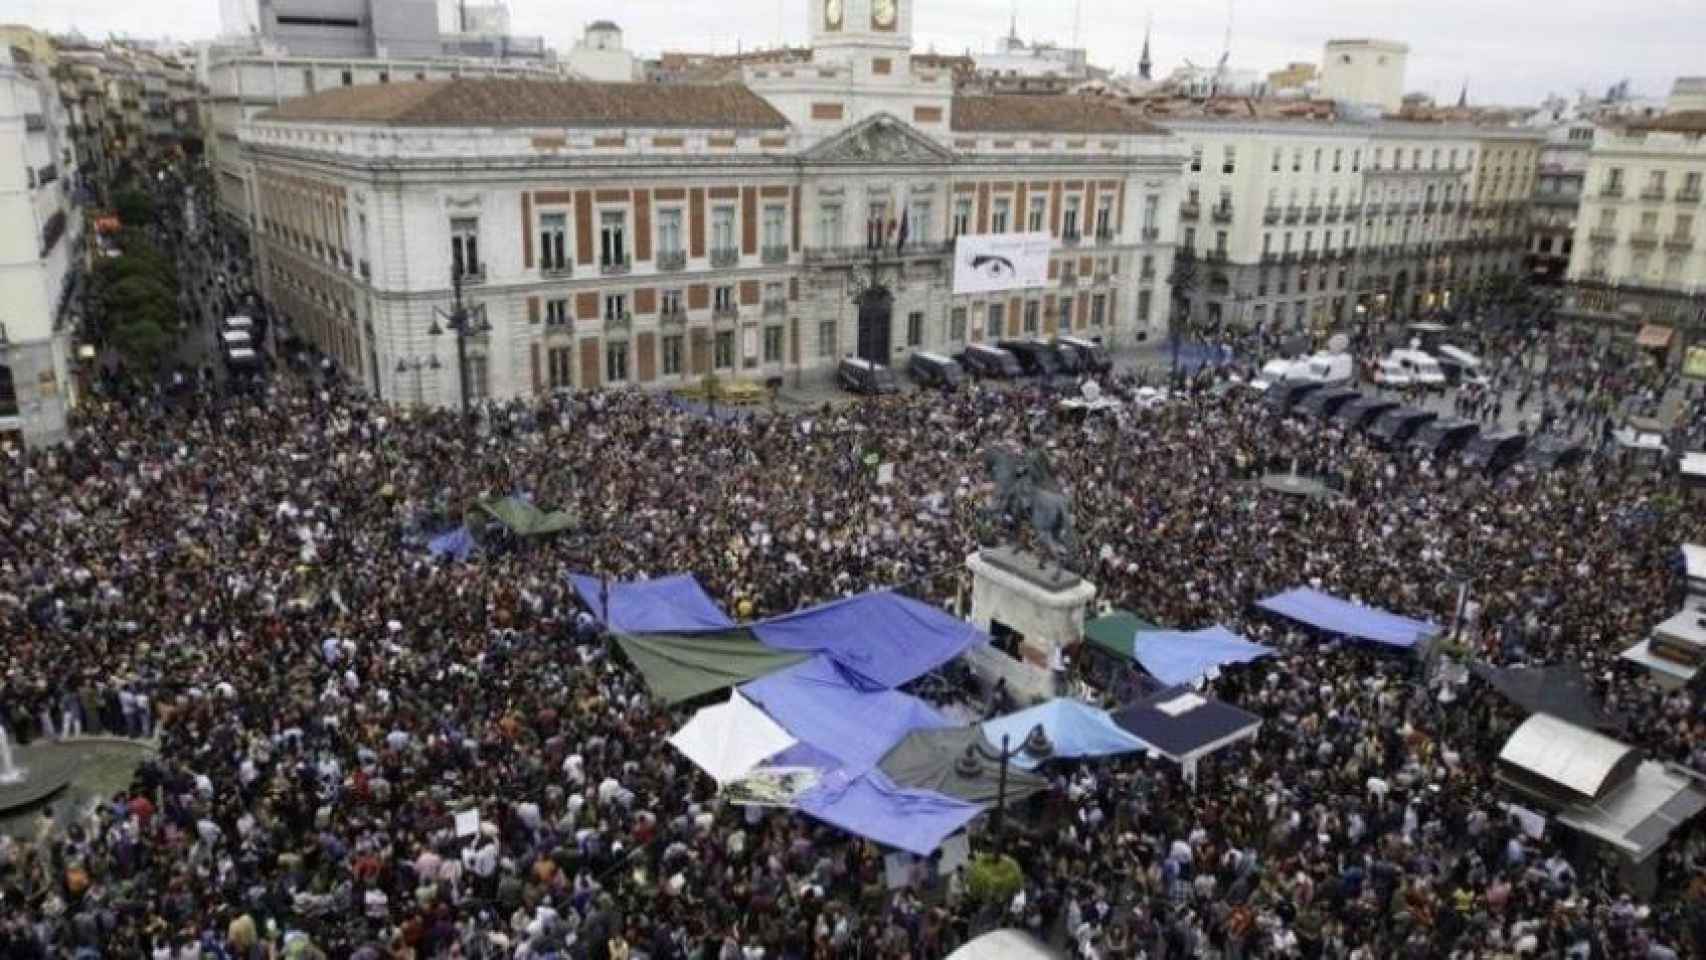 Imagen de la Puerta del Sol durante las protestas del 15-M. / MML